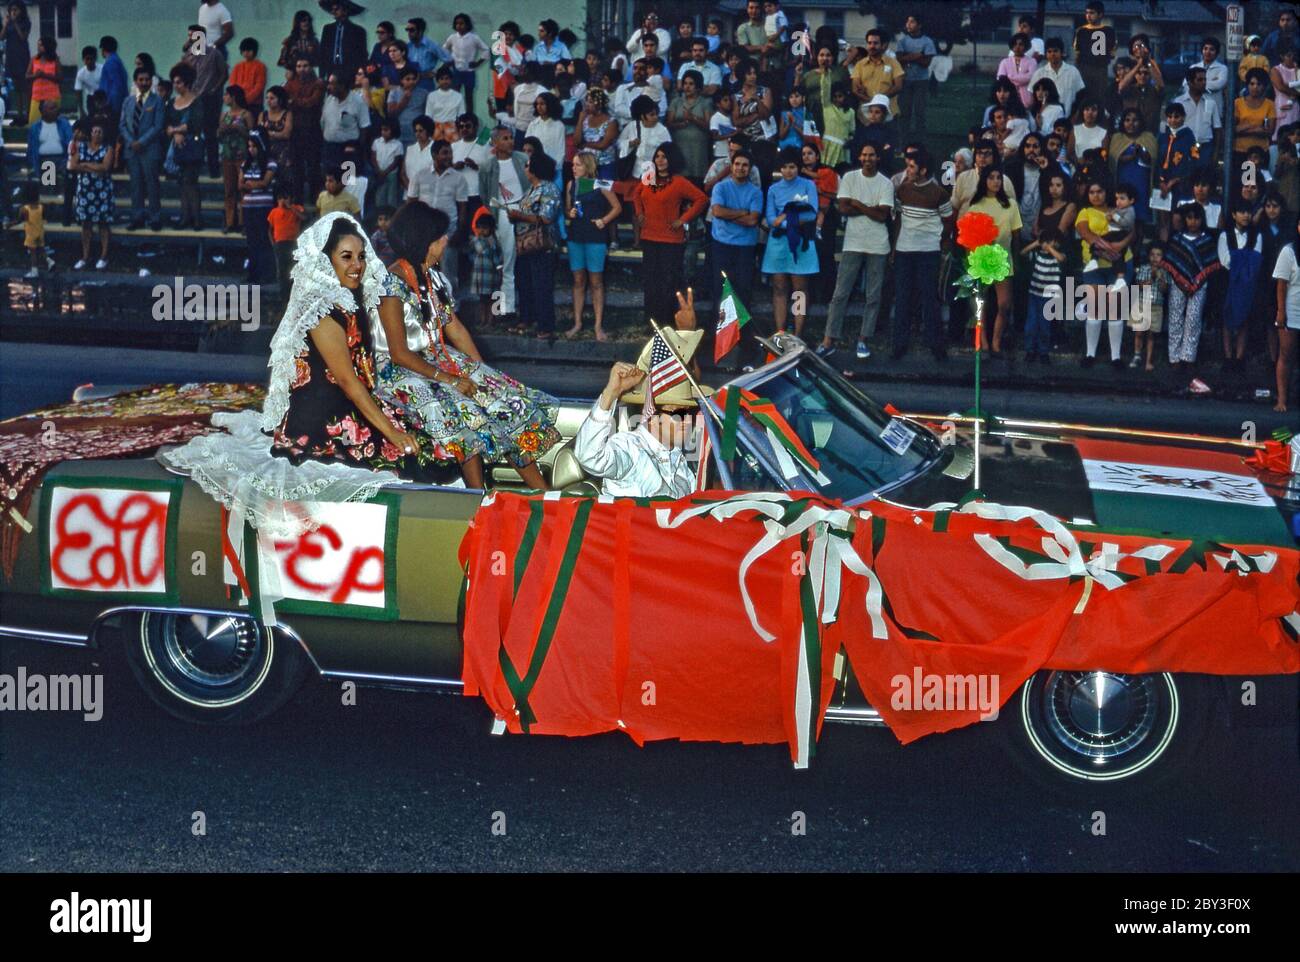 Des couleurs vives sont utilisées pour décorer une voiture dans un défilé de la communauté Chicano à Los Angeles, Californie, USA 1970 (Chicanos et Chicanas sont des hommes et des femmes d'origine mexicaine). La Journée de l'indépendance (Día de la Independencia) est un jour férié au Mexique le 16 septembre pour célébrer la libération de la domination espagnole en 1810. Un drapeau mexicain vole aux côtés d'un drapeau américain et les couleurs vert blanc et rouge du drapeau mexicain dominent. Les femmes portent une robe traditionnelle aux couleurs vives. Banque D'Images